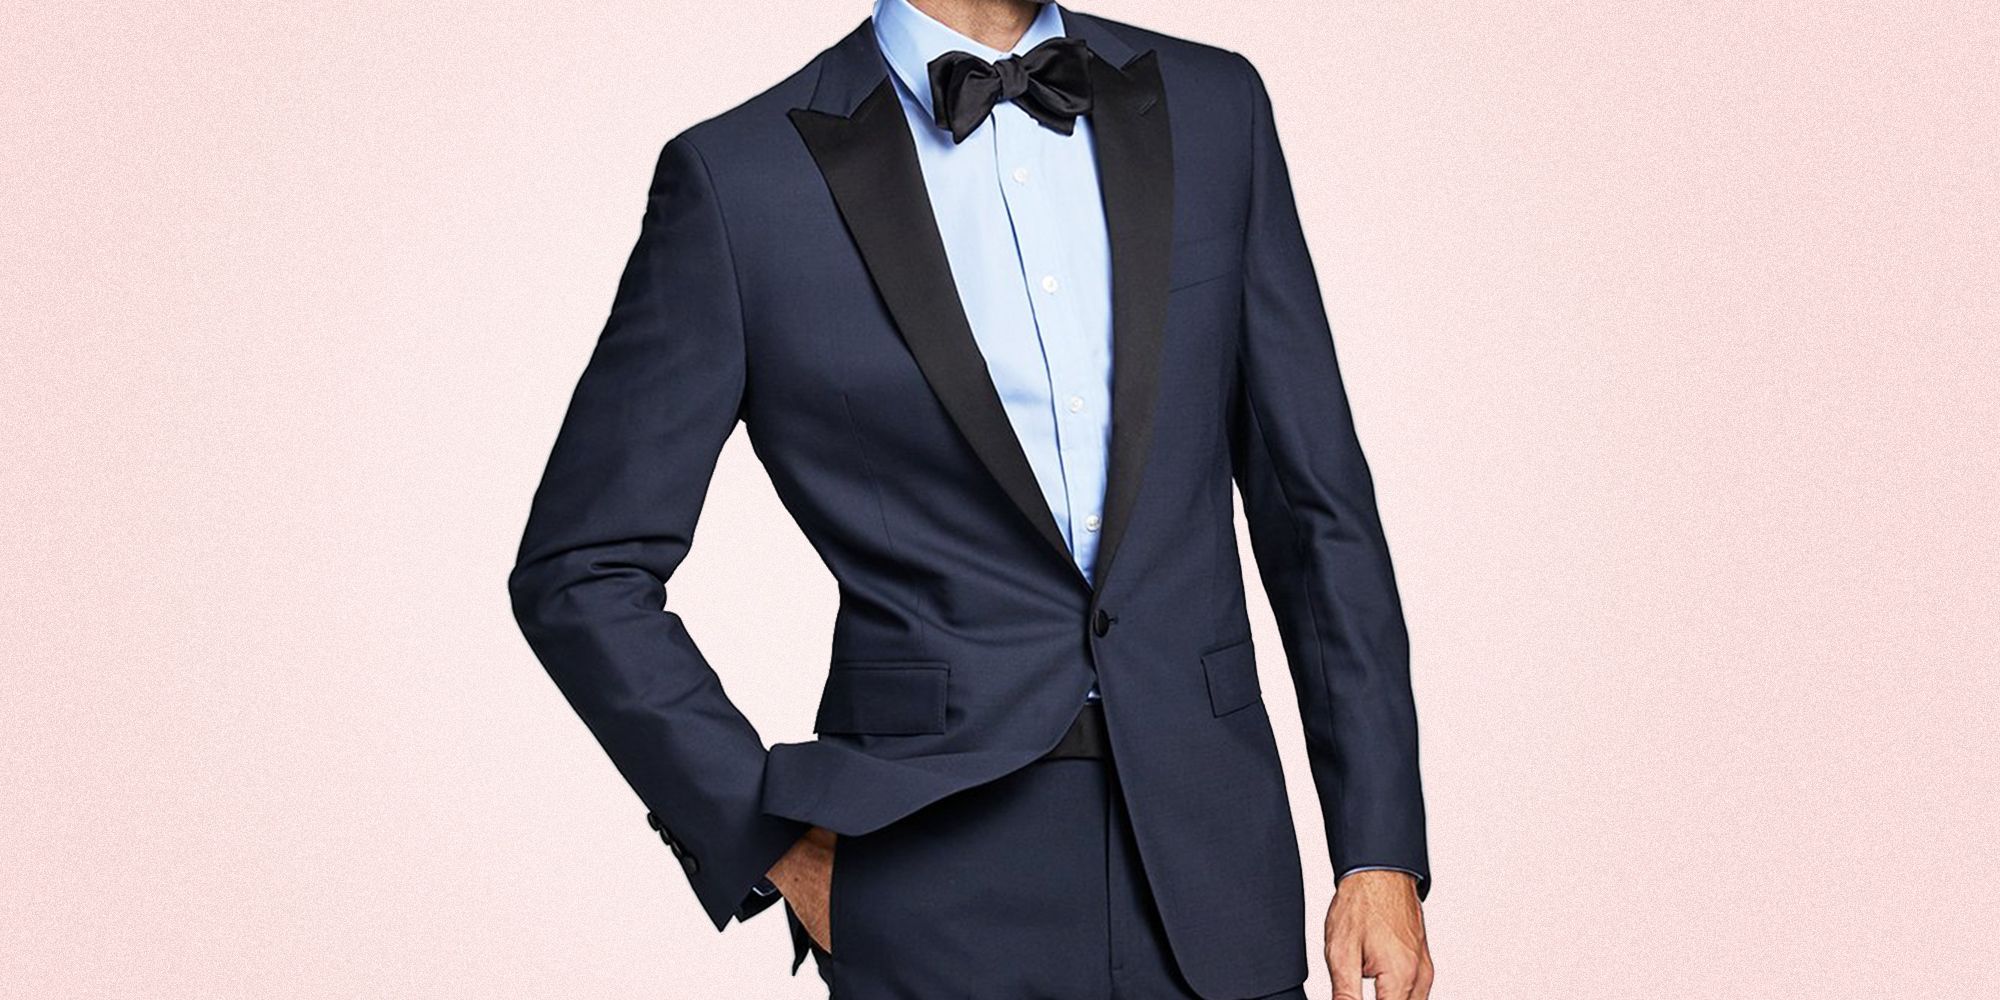 15 Best Wedding Suits for Men 2021 ...